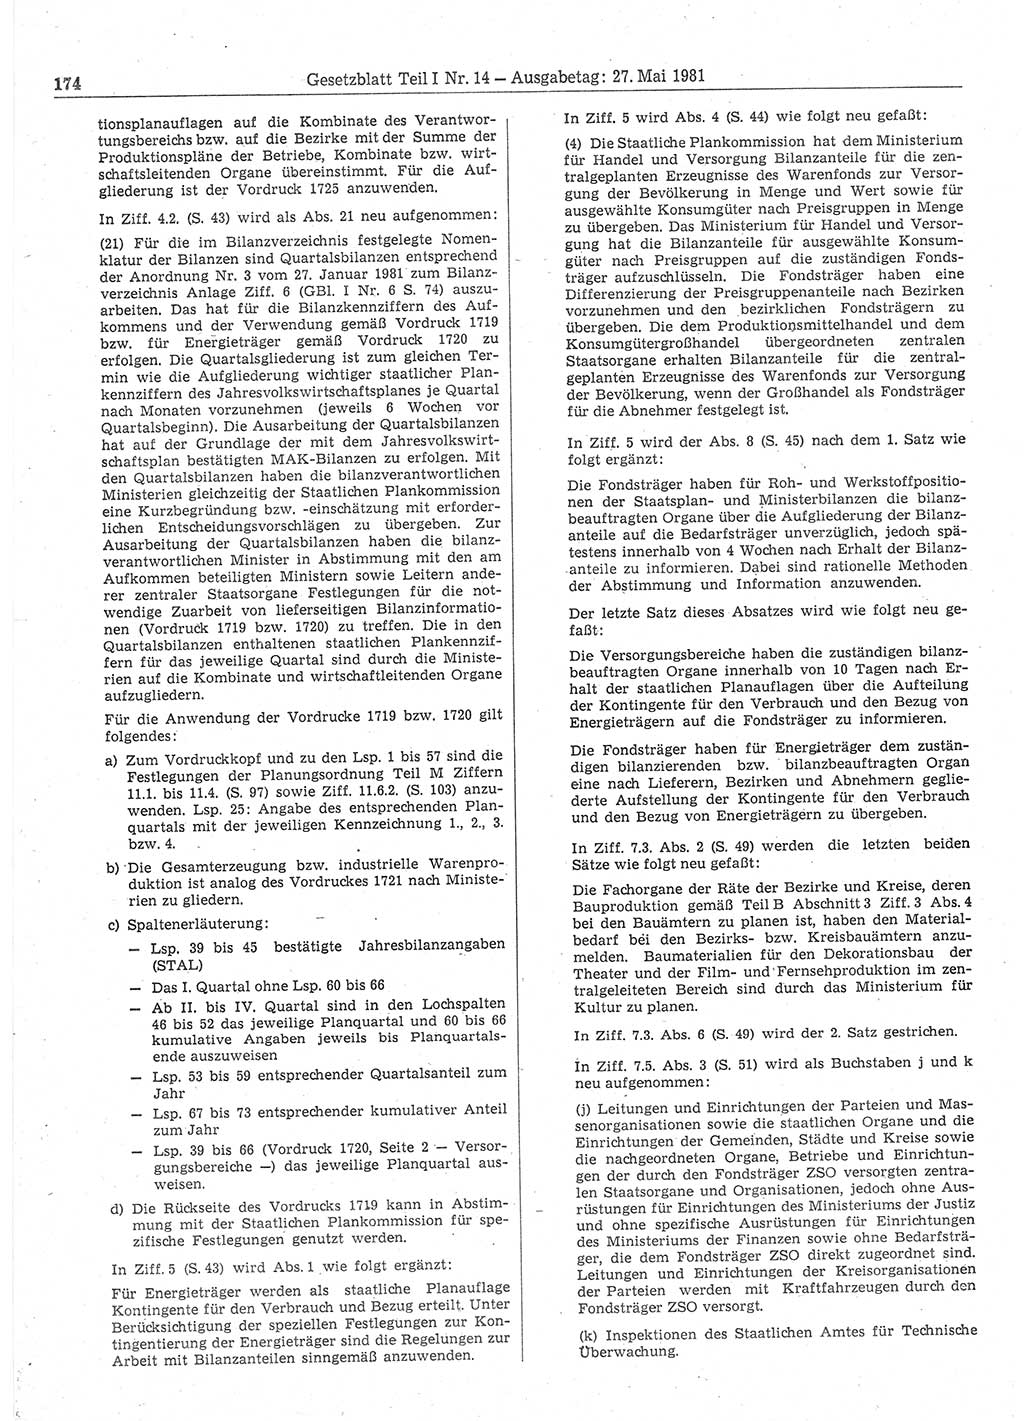 Gesetzblatt (GBl.) der Deutschen Demokratischen Republik (DDR) Teil Ⅰ 1981, Seite 174 (GBl. DDR Ⅰ 1981, S. 174)